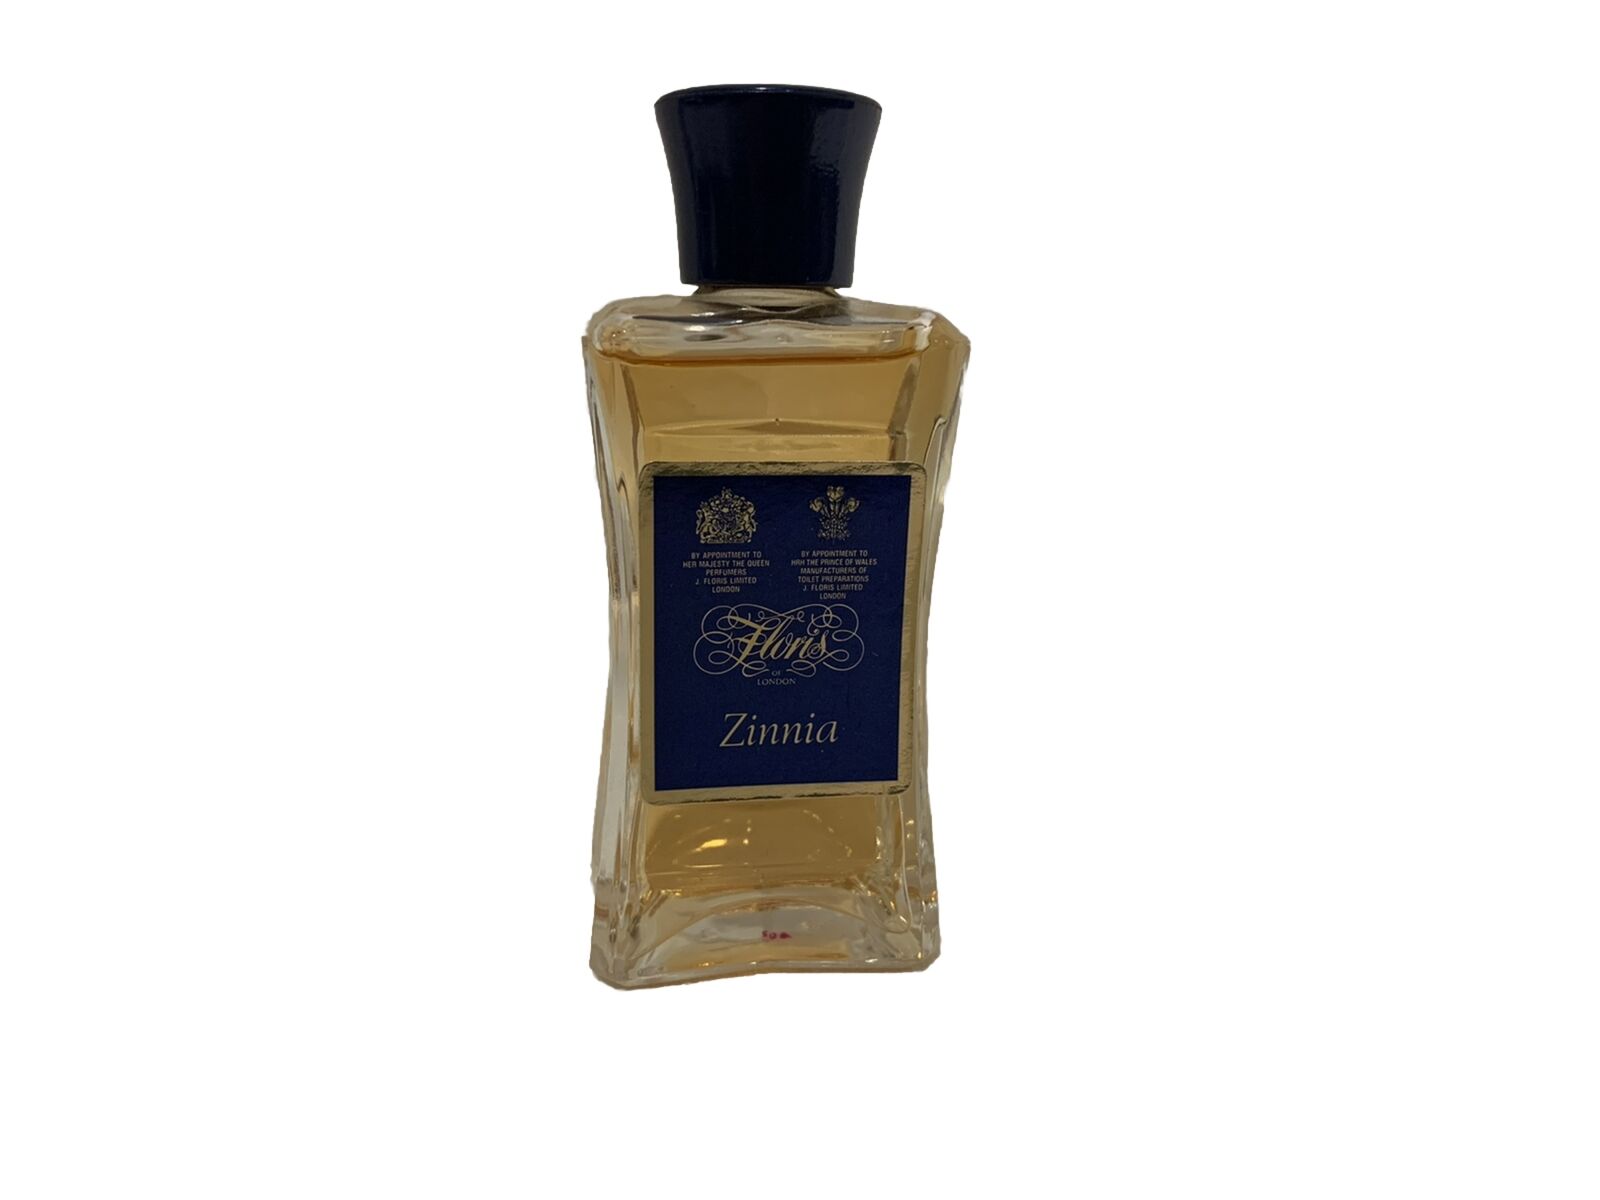 Zinnia Eau De Toilette for the Lady Floris Of London 1 Oz. Splash Perfume